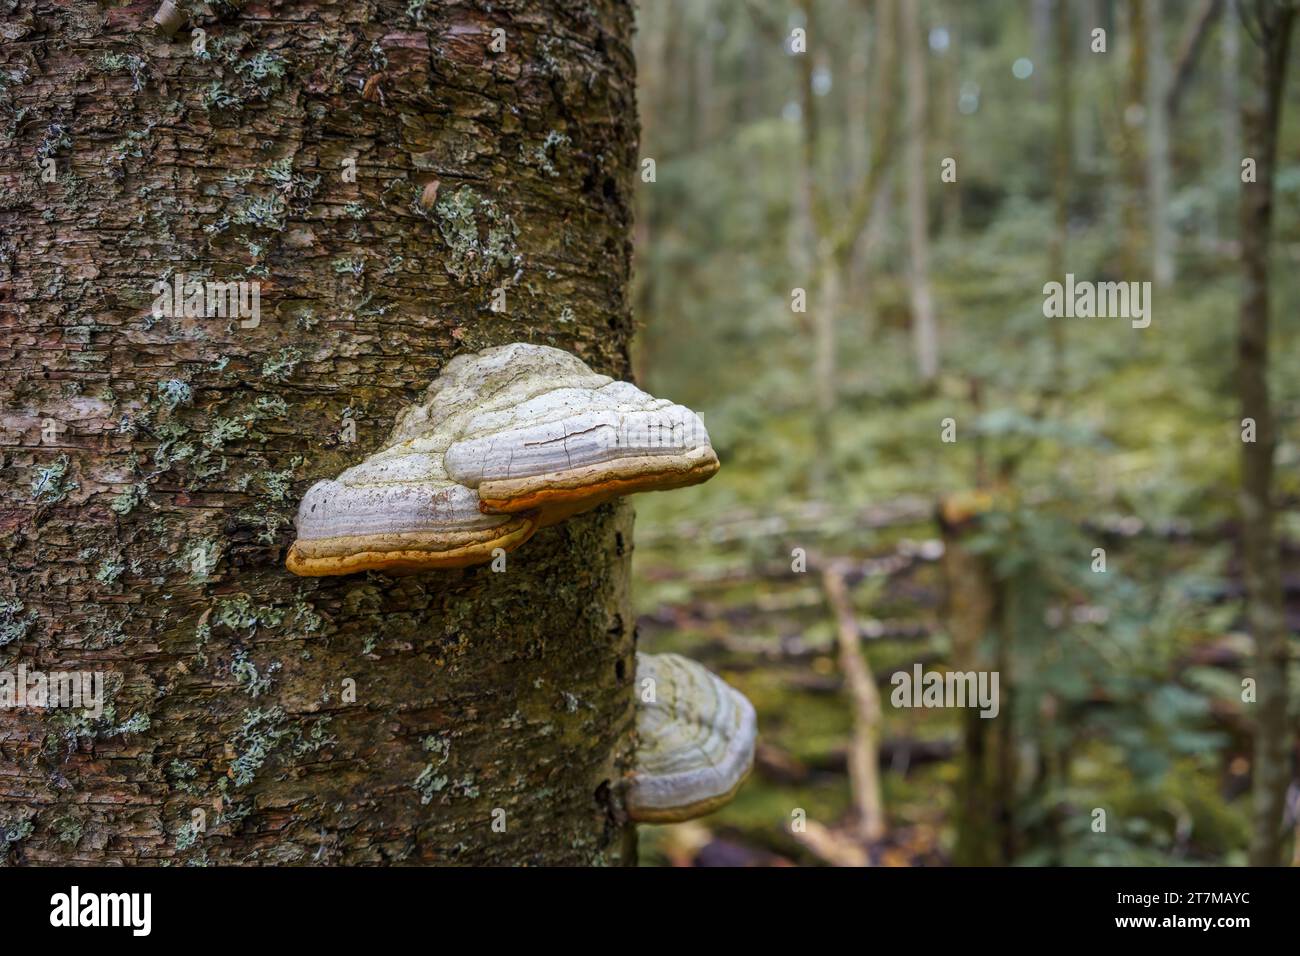 Fungo dello zoccolo o fungo del tinder (Fomes fomentarius), primo piano sul tronco dell'albero. Foto Stock